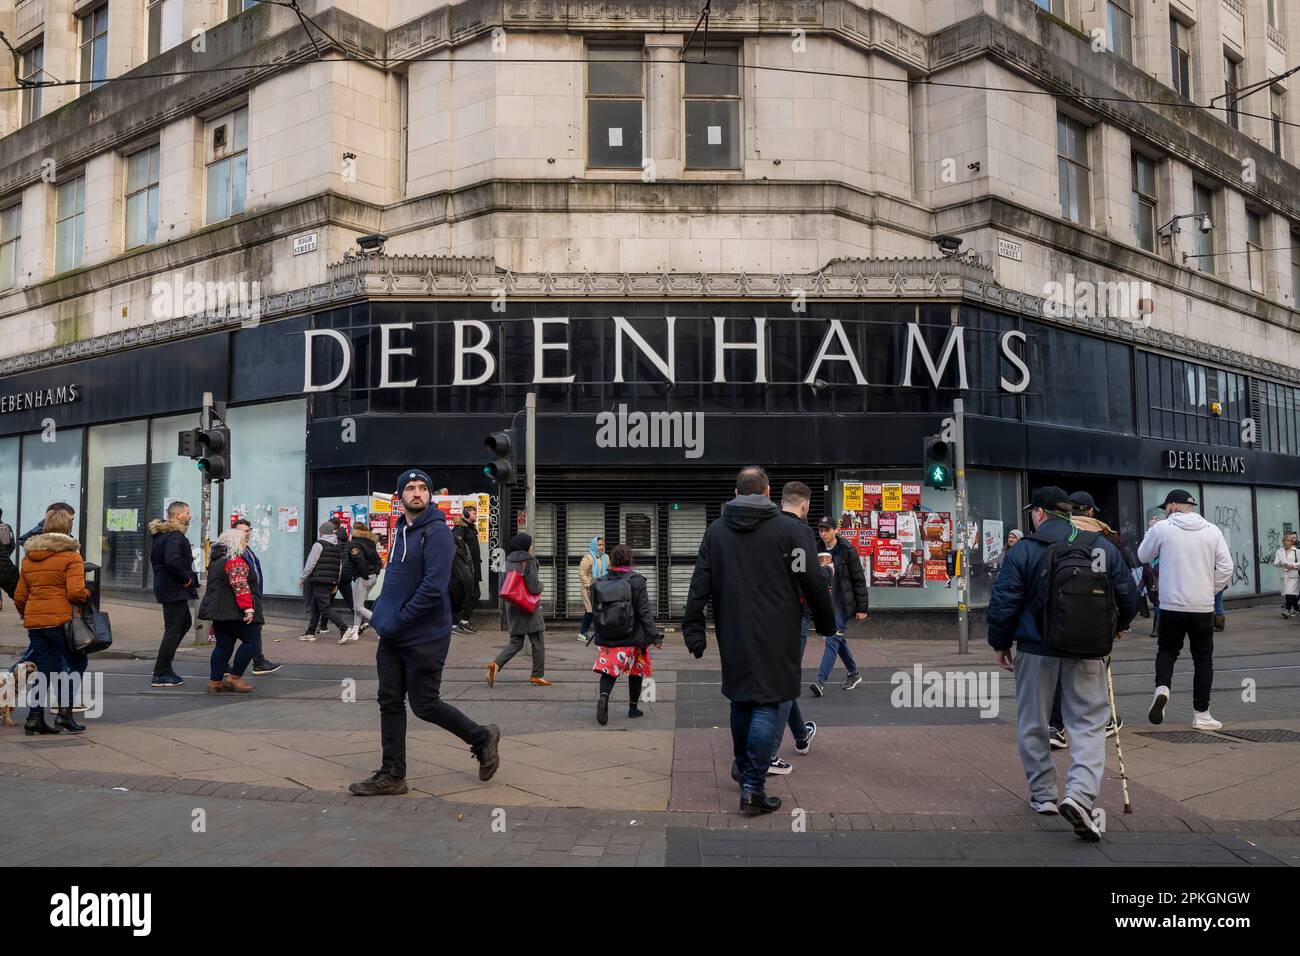 Una visione generale di un negozio chiuso Debenhams a Manchester, Inghilterra, Regno Unito. Foto Stock